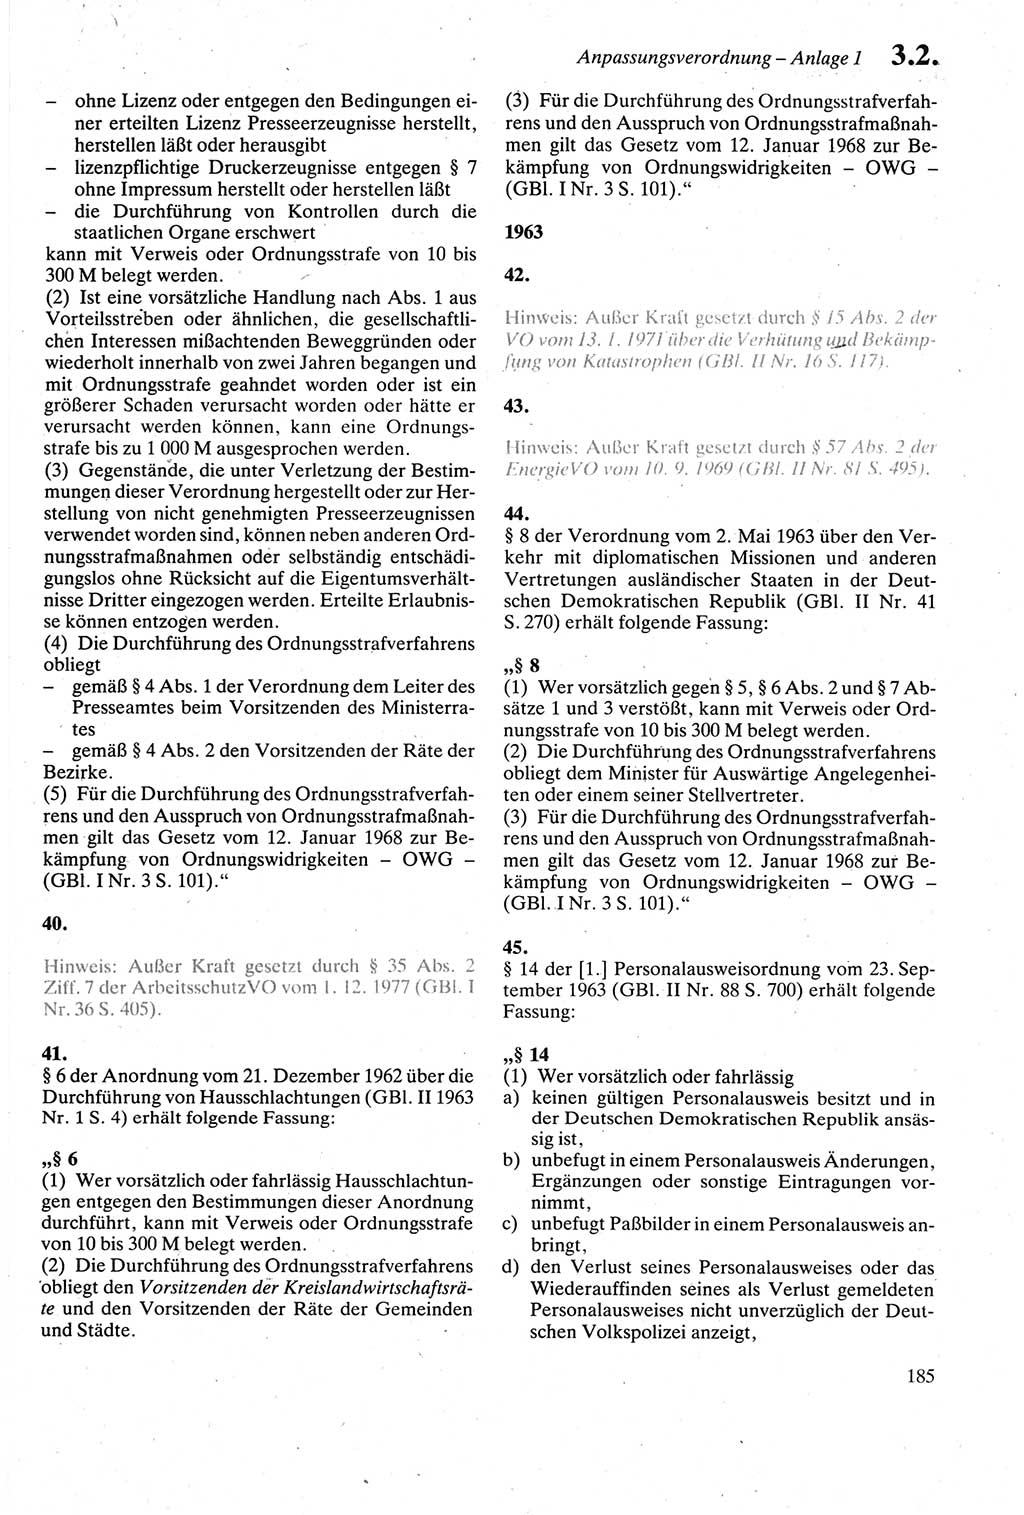 Strafgesetzbuch (StGB) der Deutschen Demokratischen Republik (DDR) sowie angrenzende Gesetze und Bestimmungen 1979, Seite 185 (StGB DDR Ges. Best. 1979, S. 185)